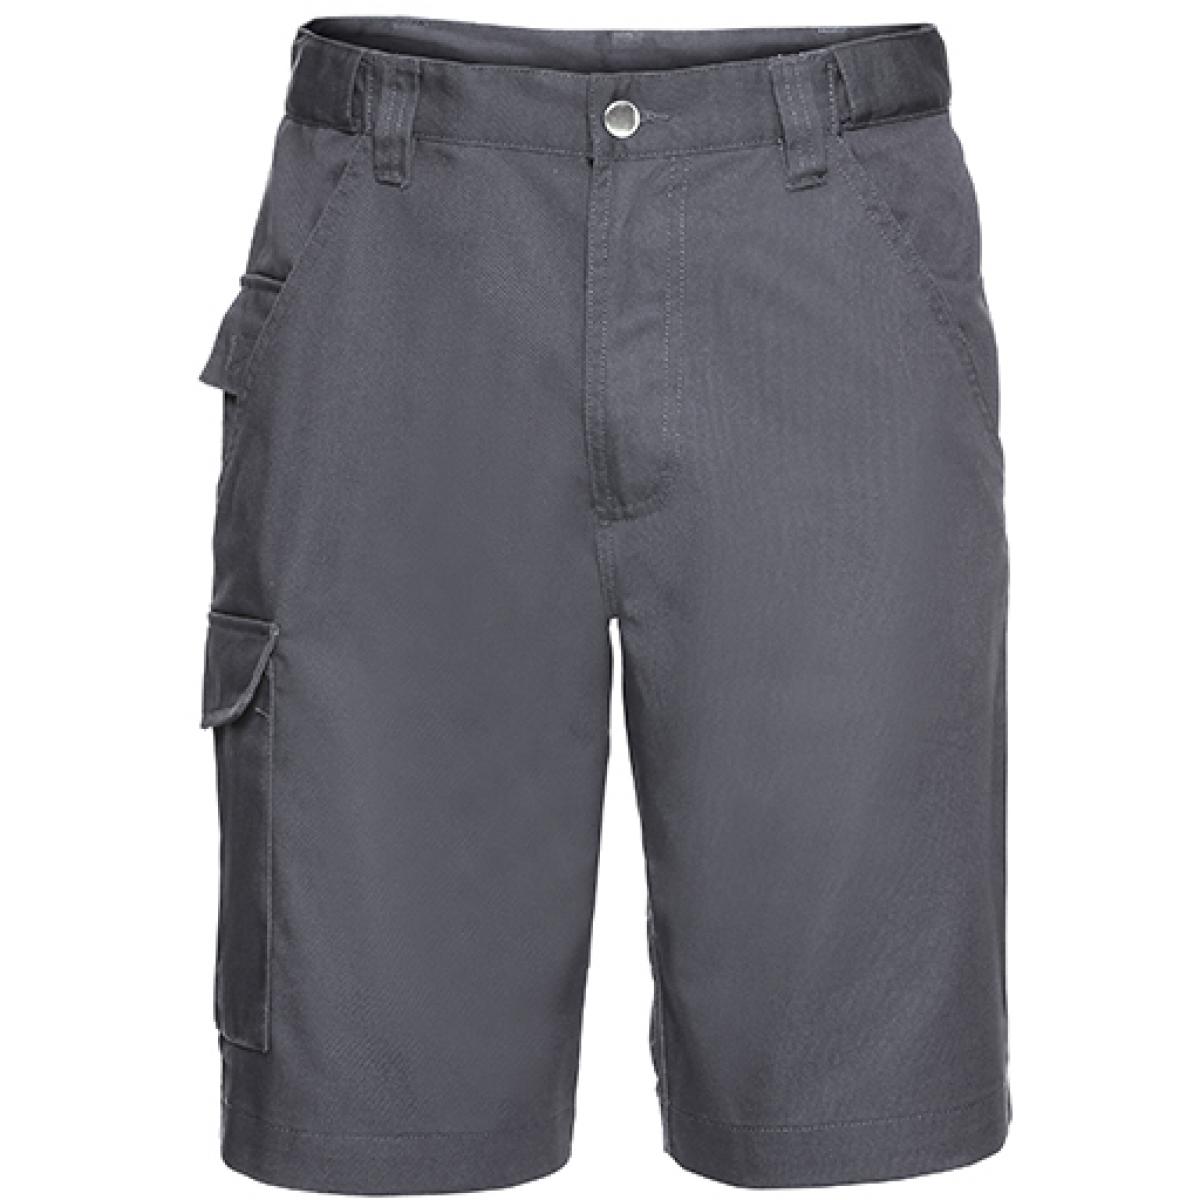 Hersteller: Russell Herstellernummer: R-002M-0 Artikelbezeichnung: Workwear-Shorts aus Polyester-/Baumwoll-Twill Farbe: Convoy Grey (Solid)